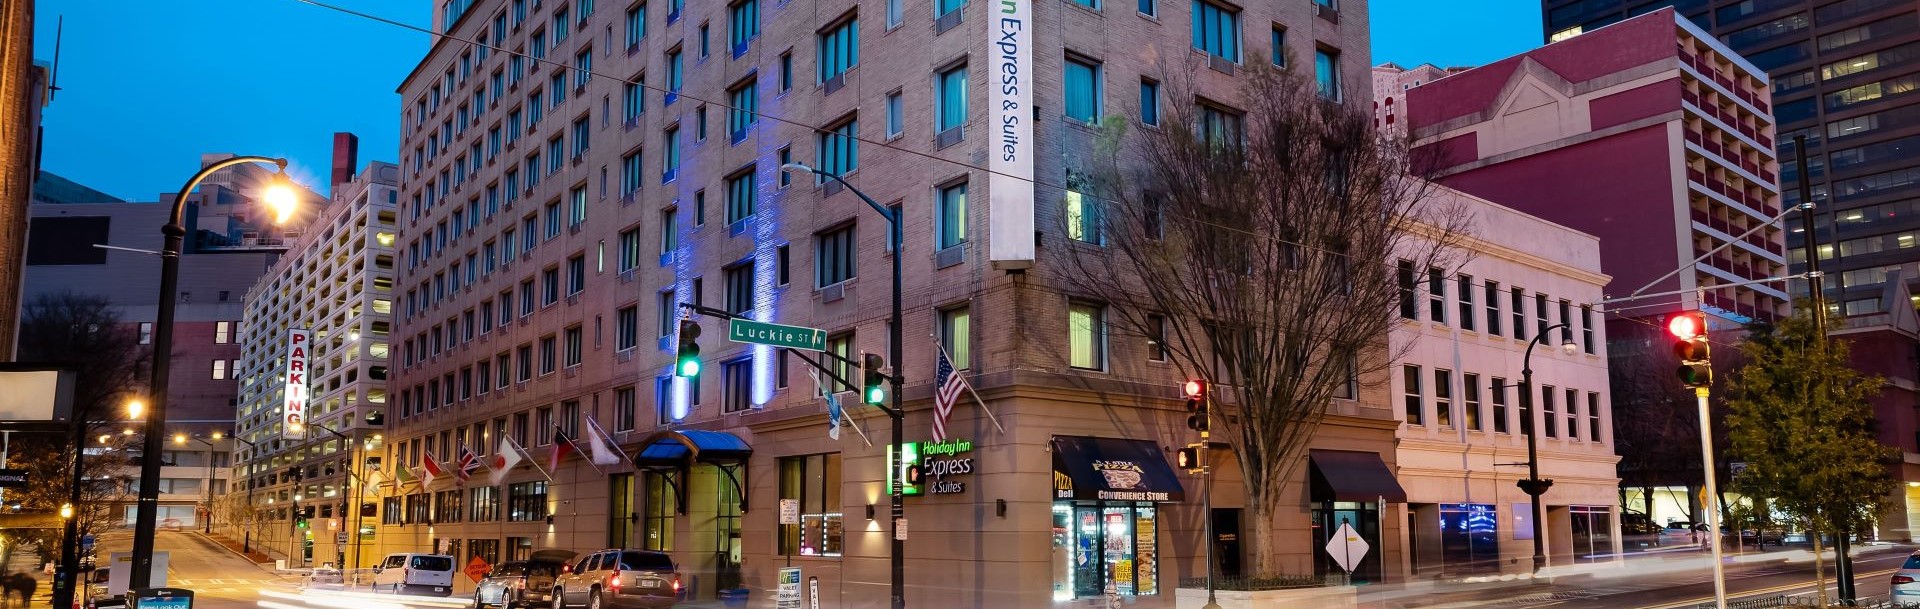 Holiday Inn Express & Suites Atlanta Downtown, Atlanta